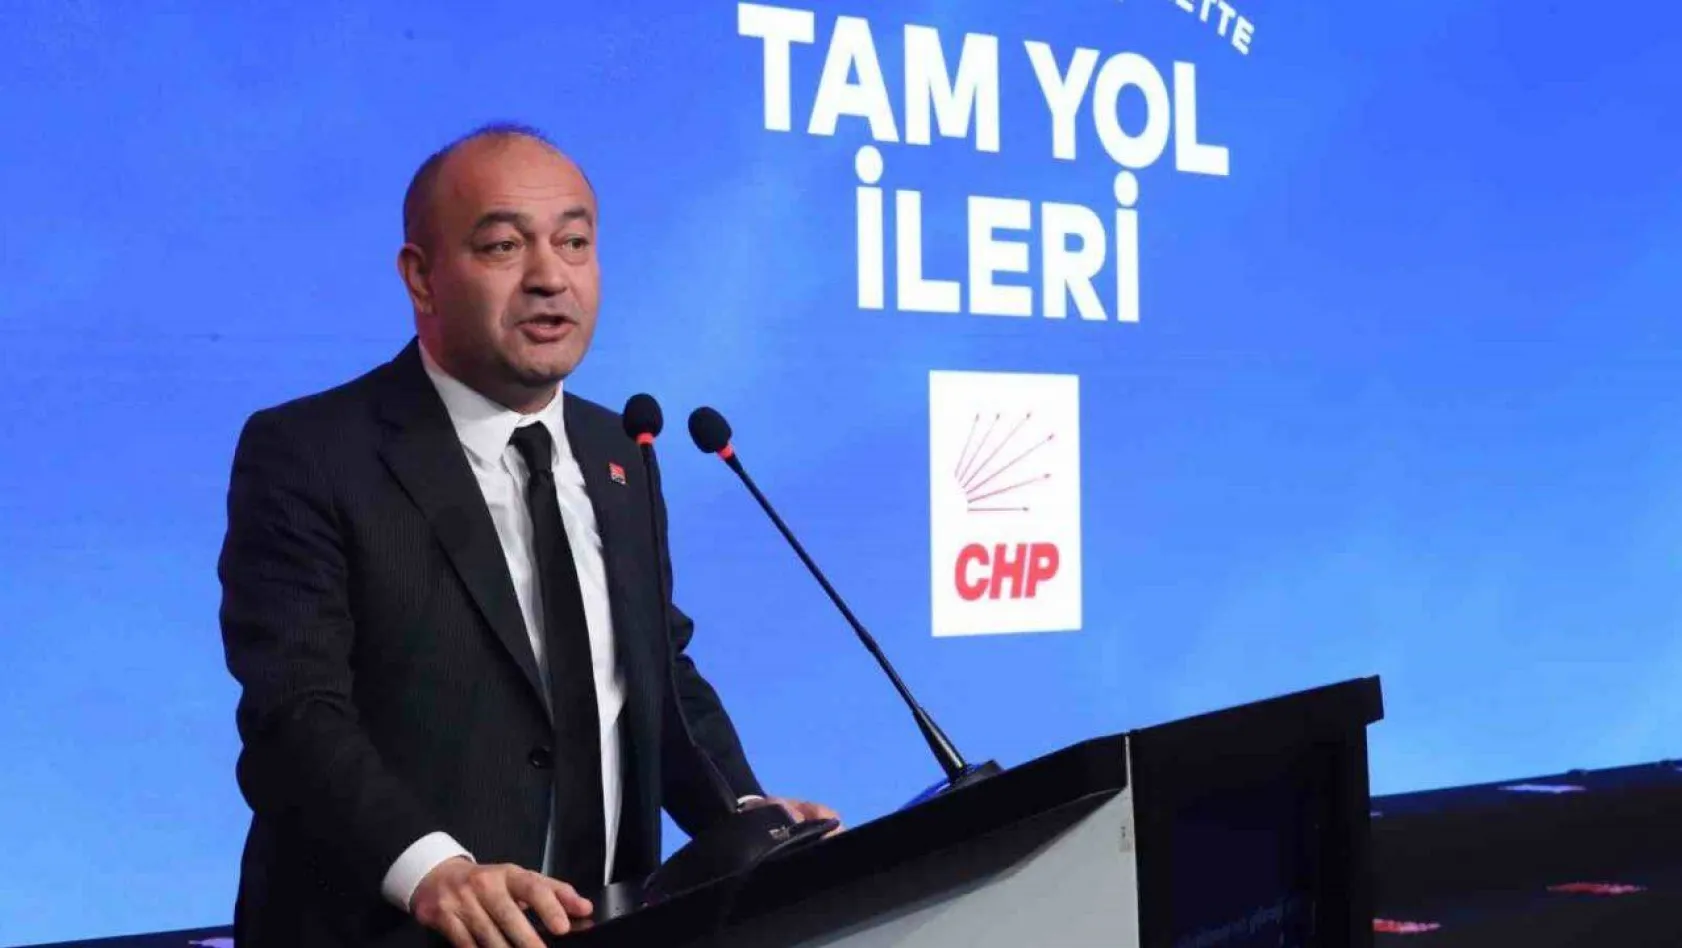 Büyükçekmece Belediye Başkanı Hasan Akgün proje tanıtım lansmanını gerçekleştirdi